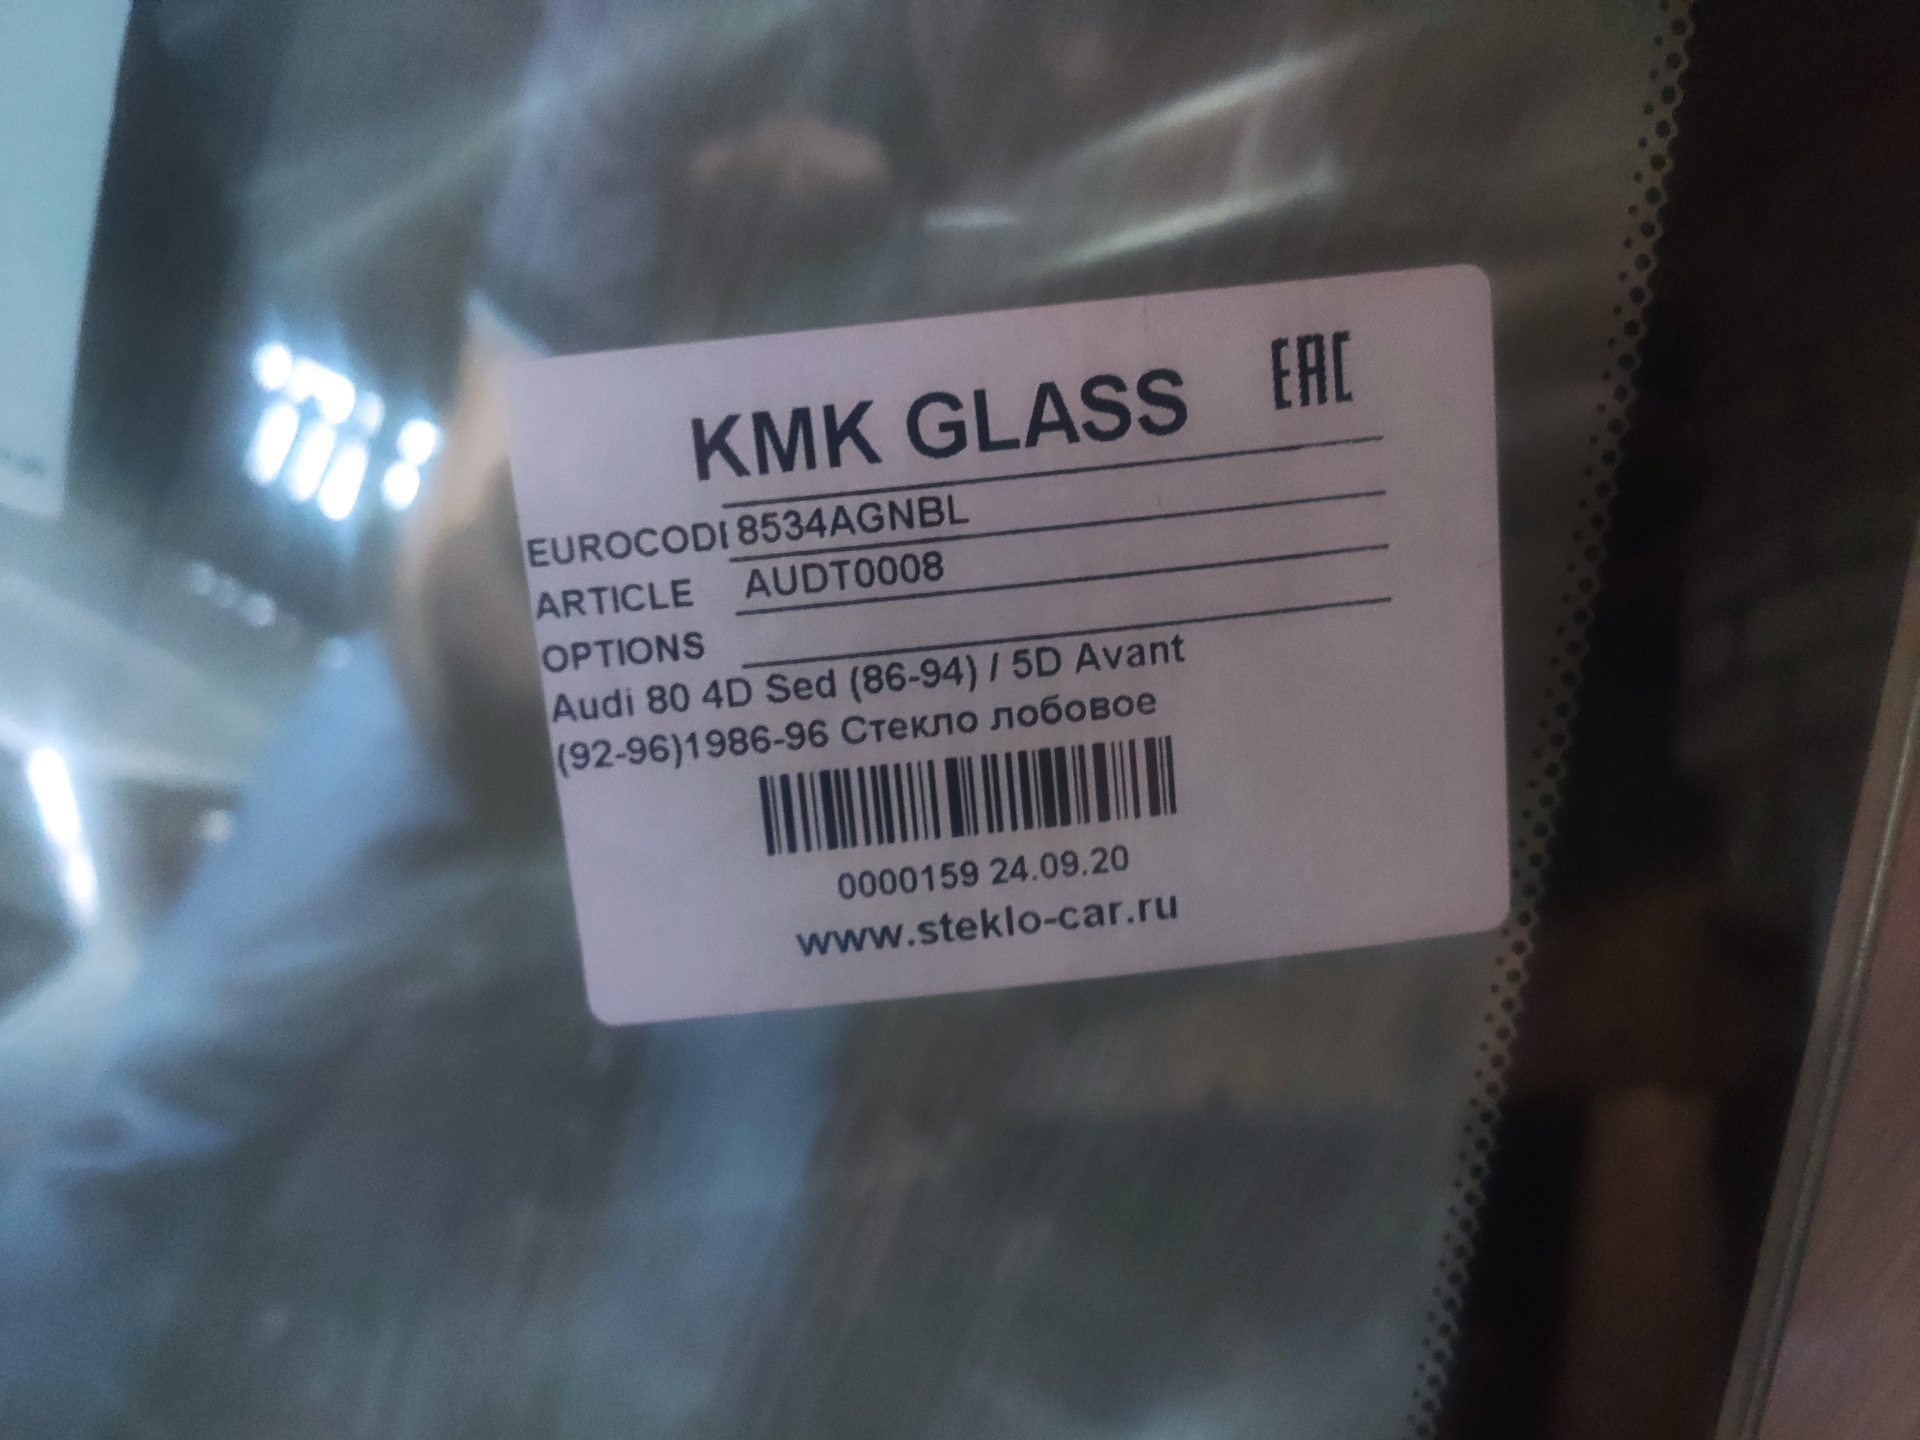 Лобовое стекло кмк отзывы. 8534agnbl KMK Glass. KMK Glass 8537agnbl. KMK Glass 8537agnbl стекло лобовое. KMK Glass 5649agnbl стекло лобовое.